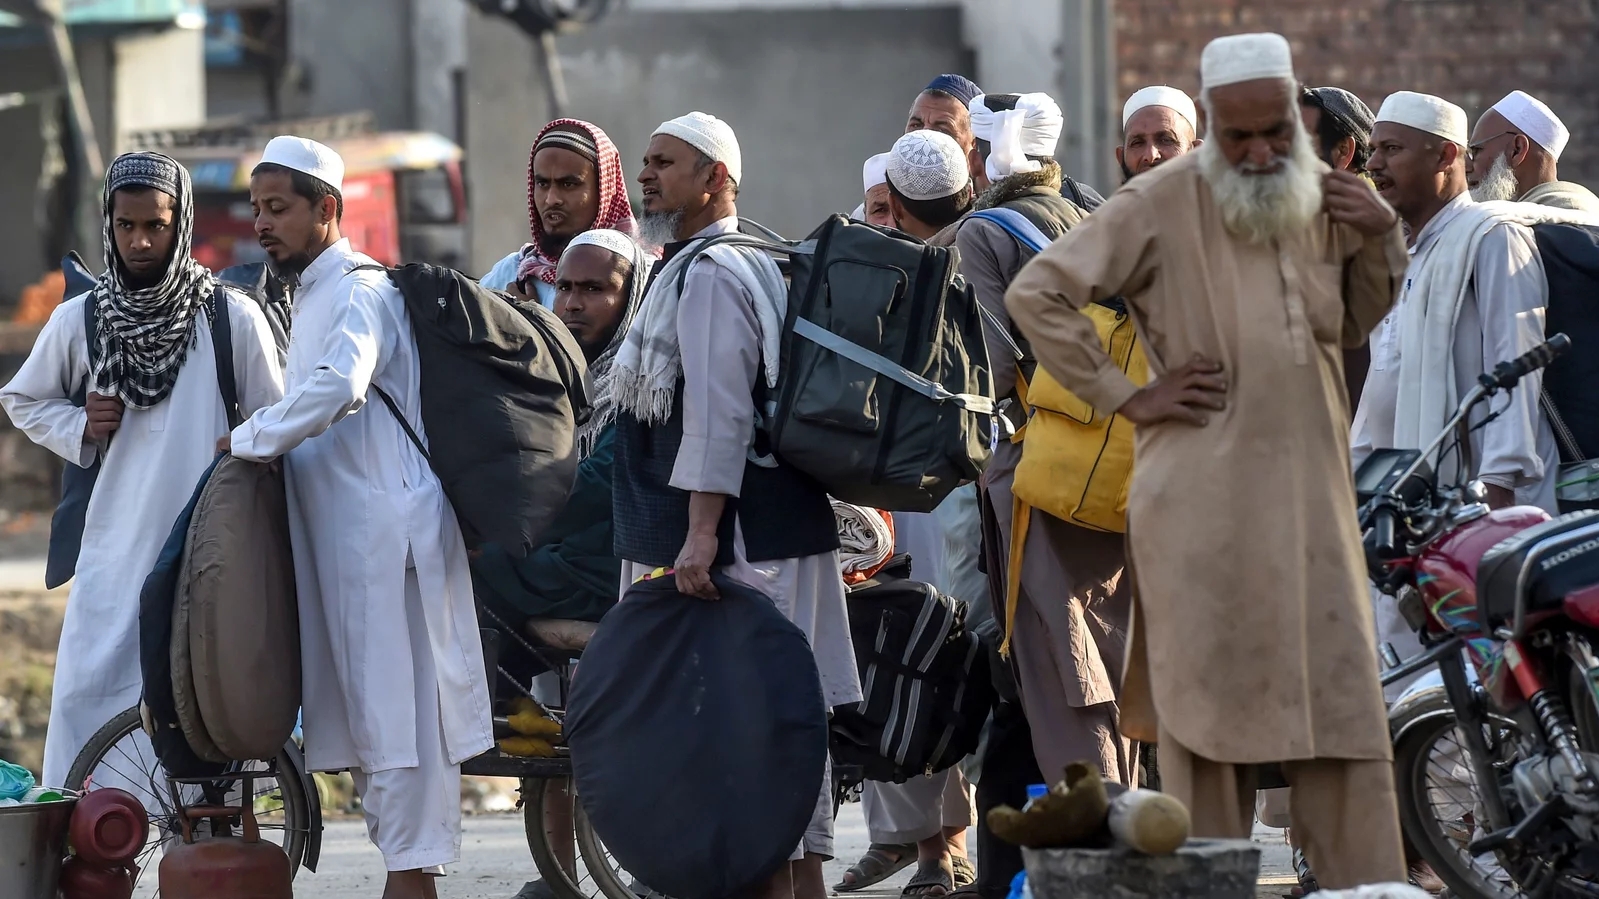 أعضاء جماعة التبليغ يستعدون للمغادرة بعد تجمع ديني حاشد خارج لاهور في 13 مارس.